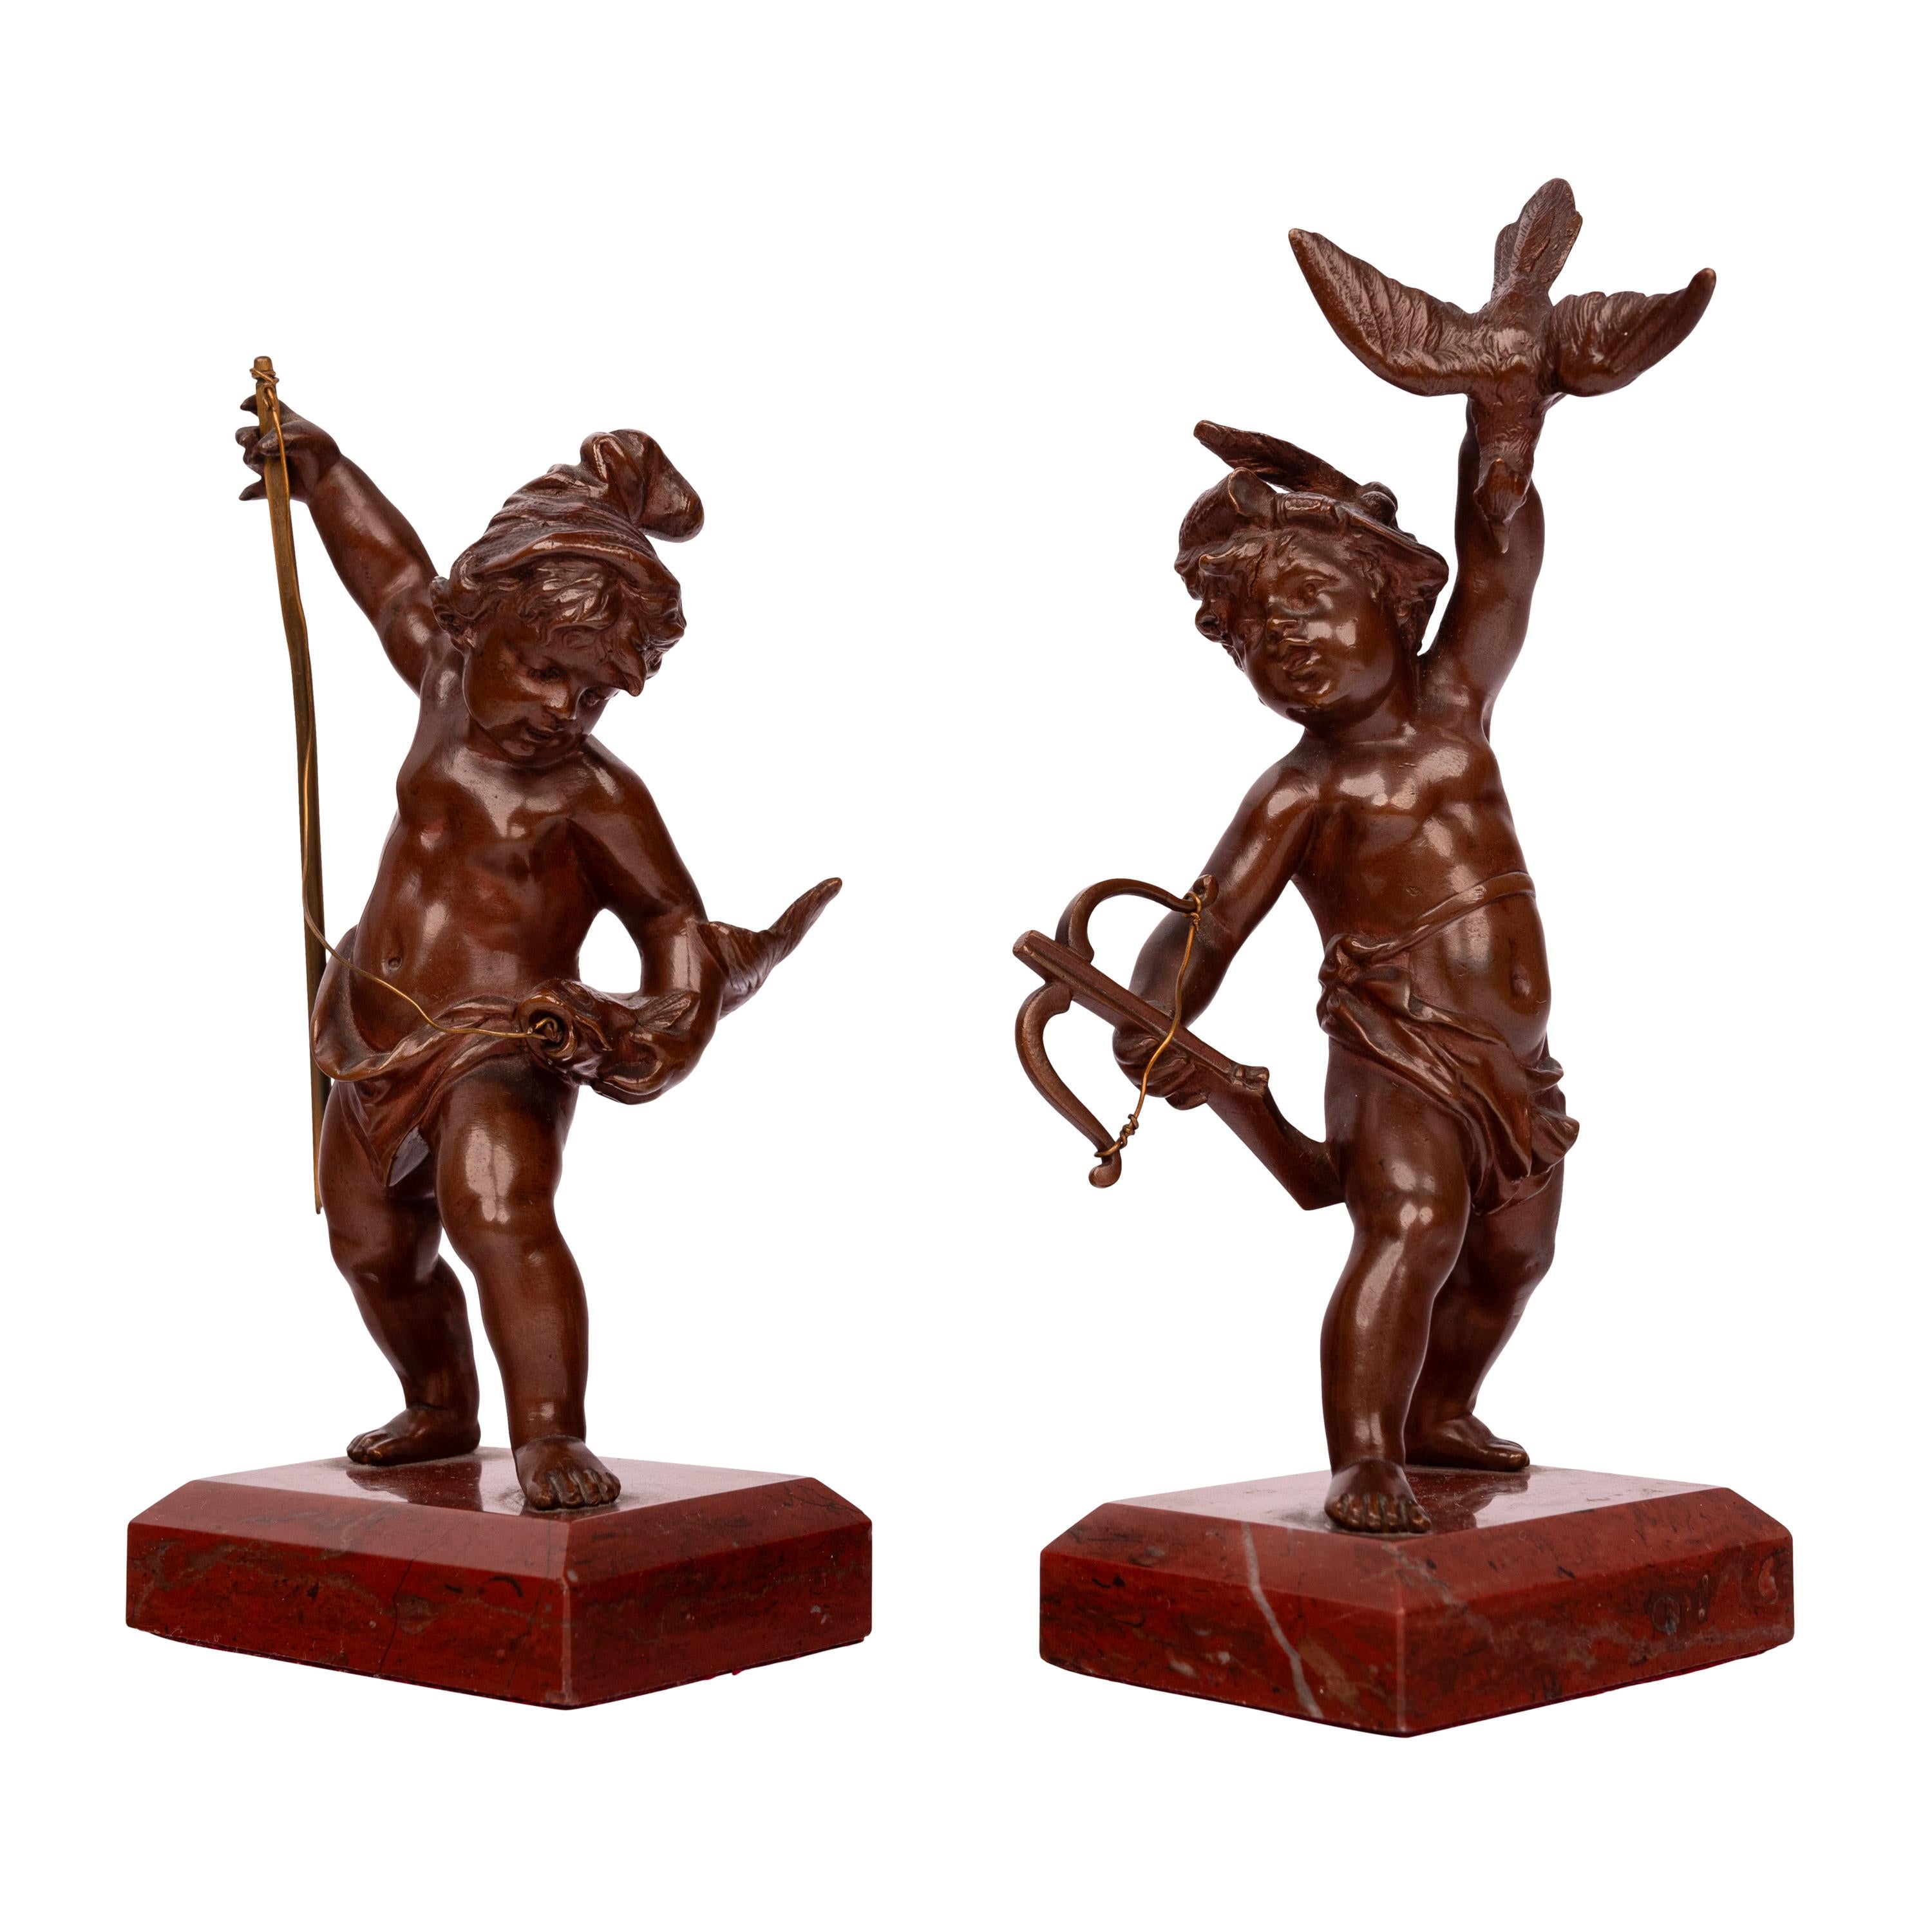 Très belle paire de statues de putti en bronze du Grand Tour italien sur des bases en marbre Breccia, vers 1850.
L'une des plus belles paires de putti antiques en bronze du Grand Tour que nous ayons eues depuis un certain temps. Les bronzes sont